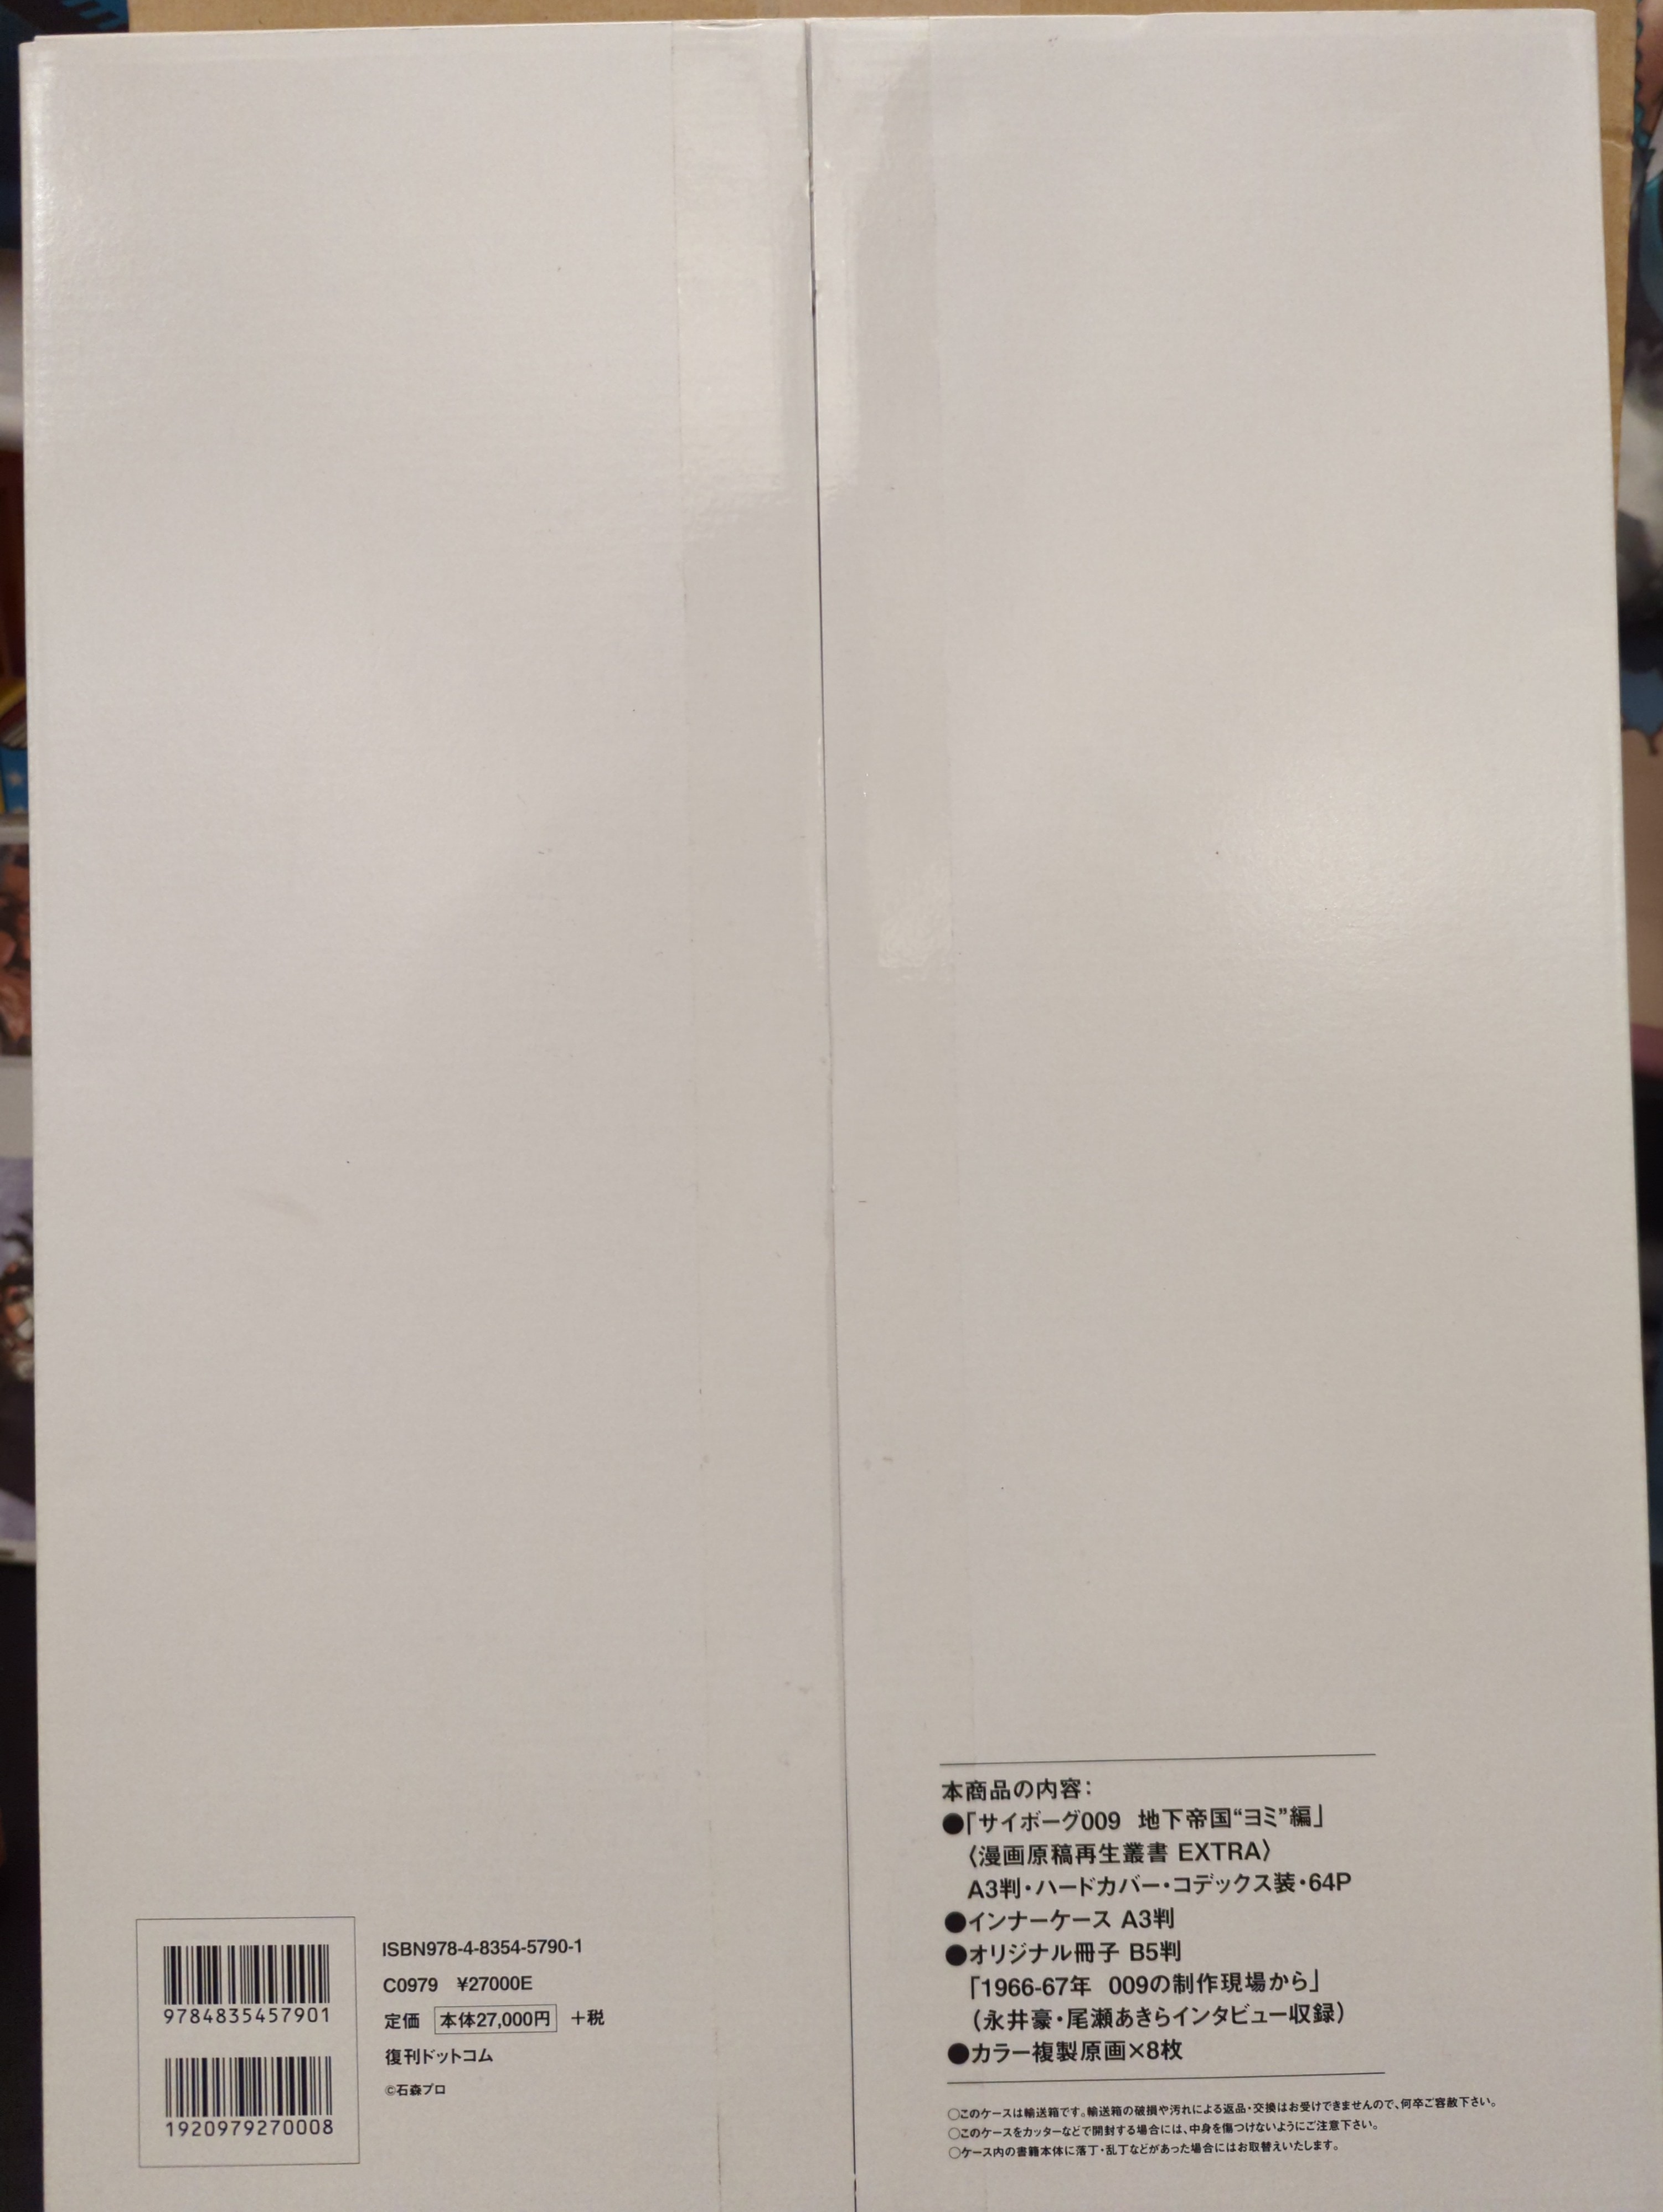 復刊ドットコム 石ノ森章太郎 サイボーグ009 地下帝国ヨミ編 漫画原稿